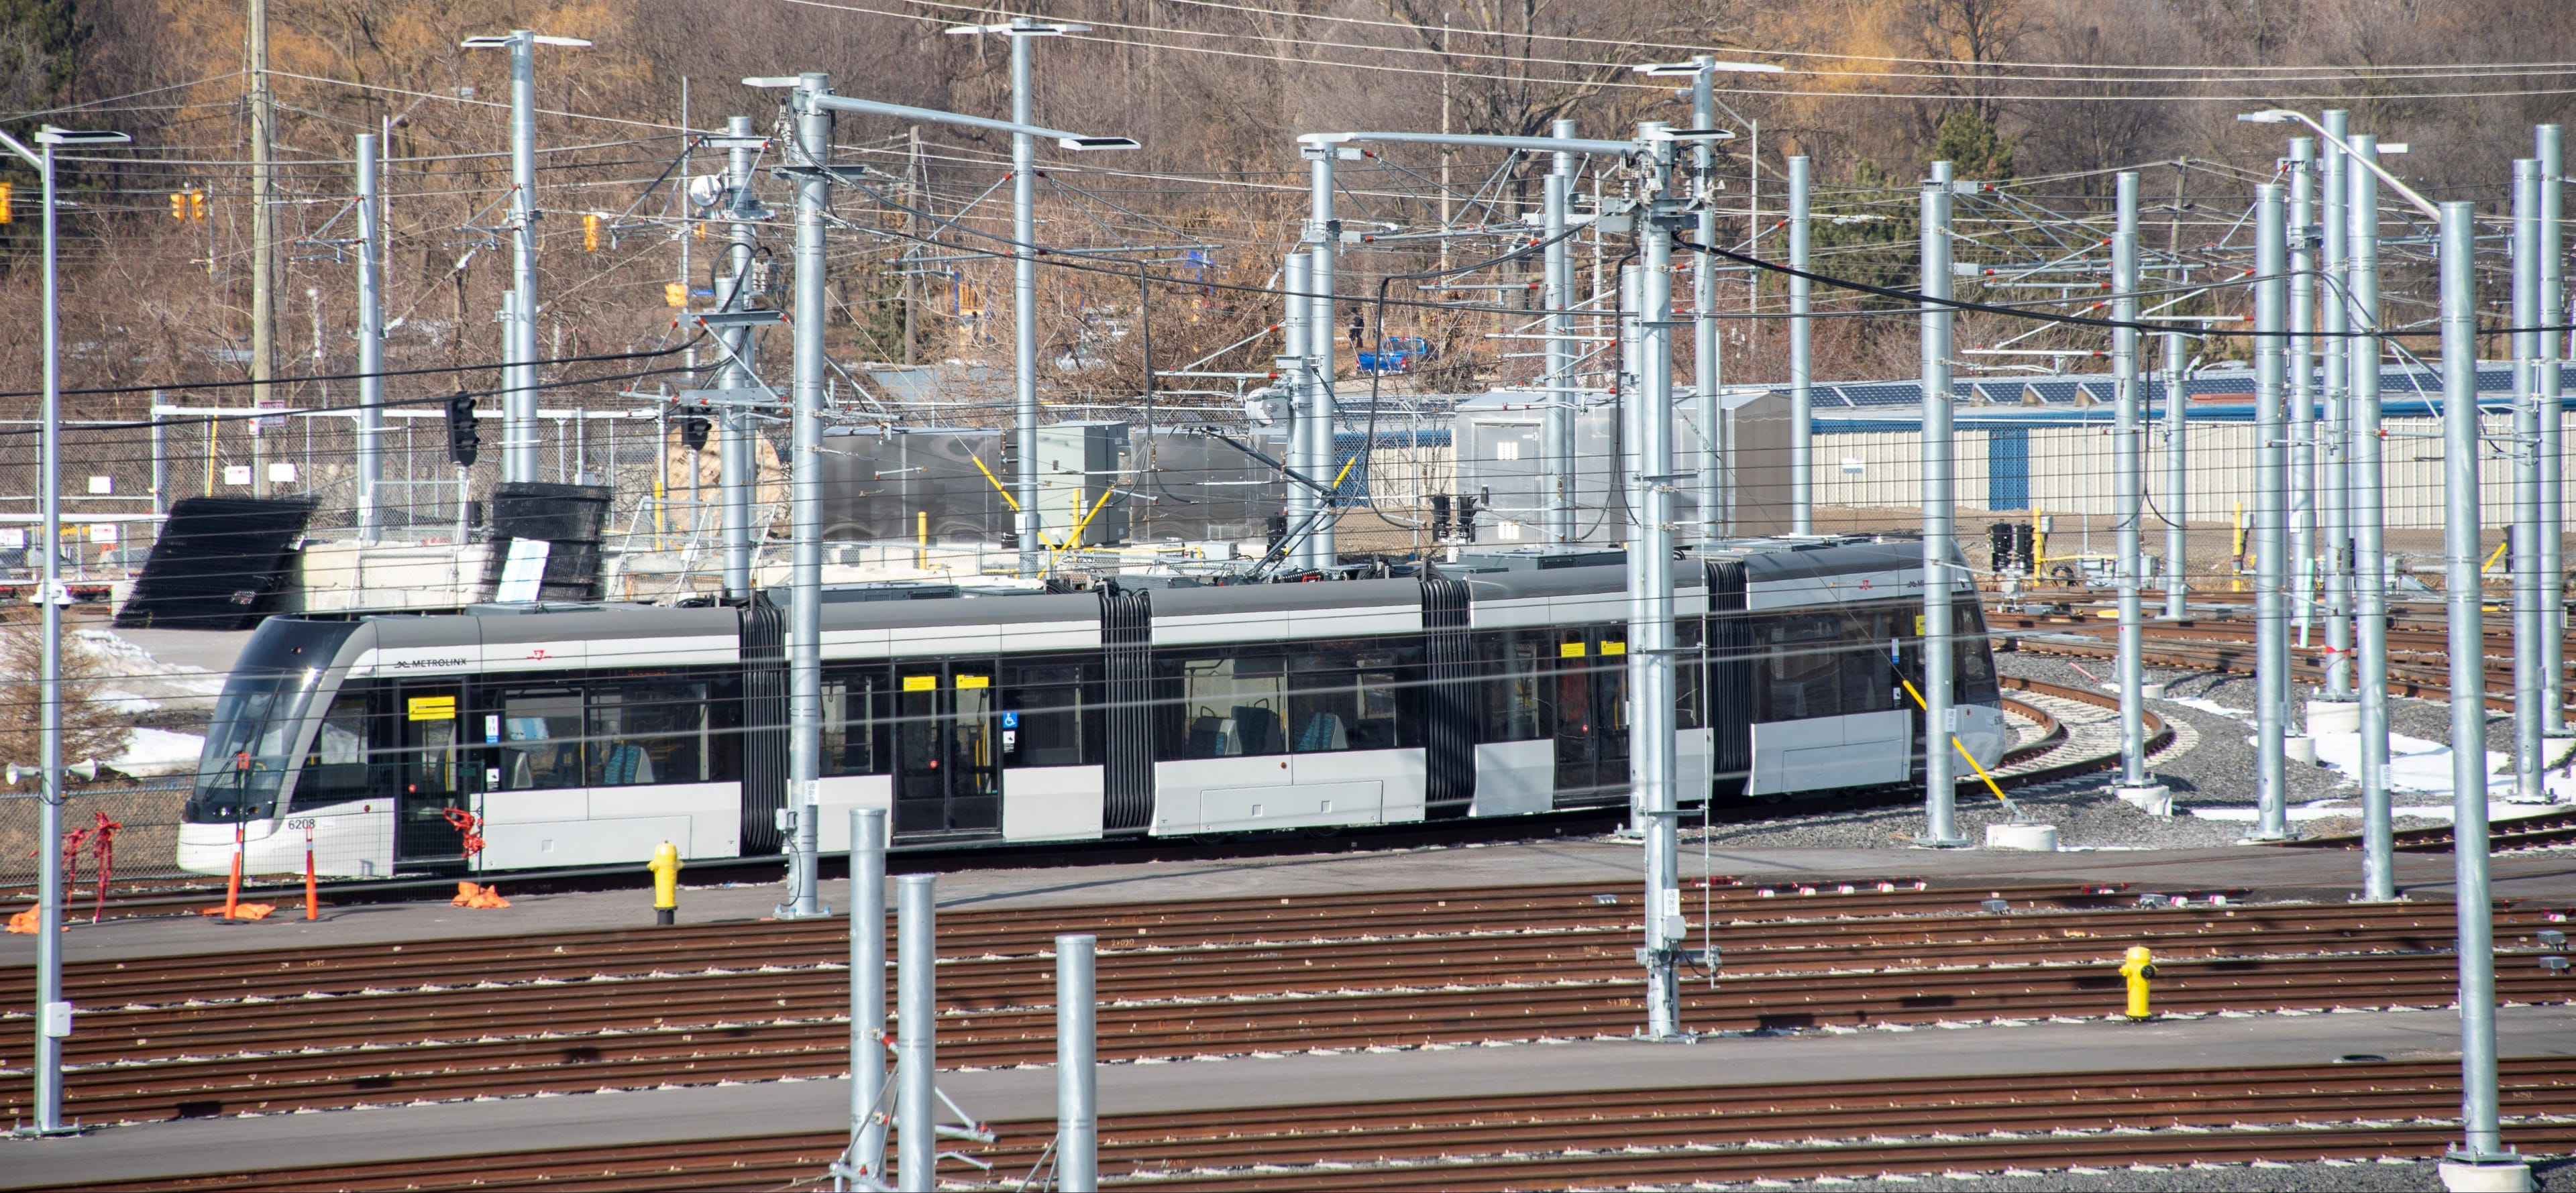 An LRV moves across tracks inside the facility.